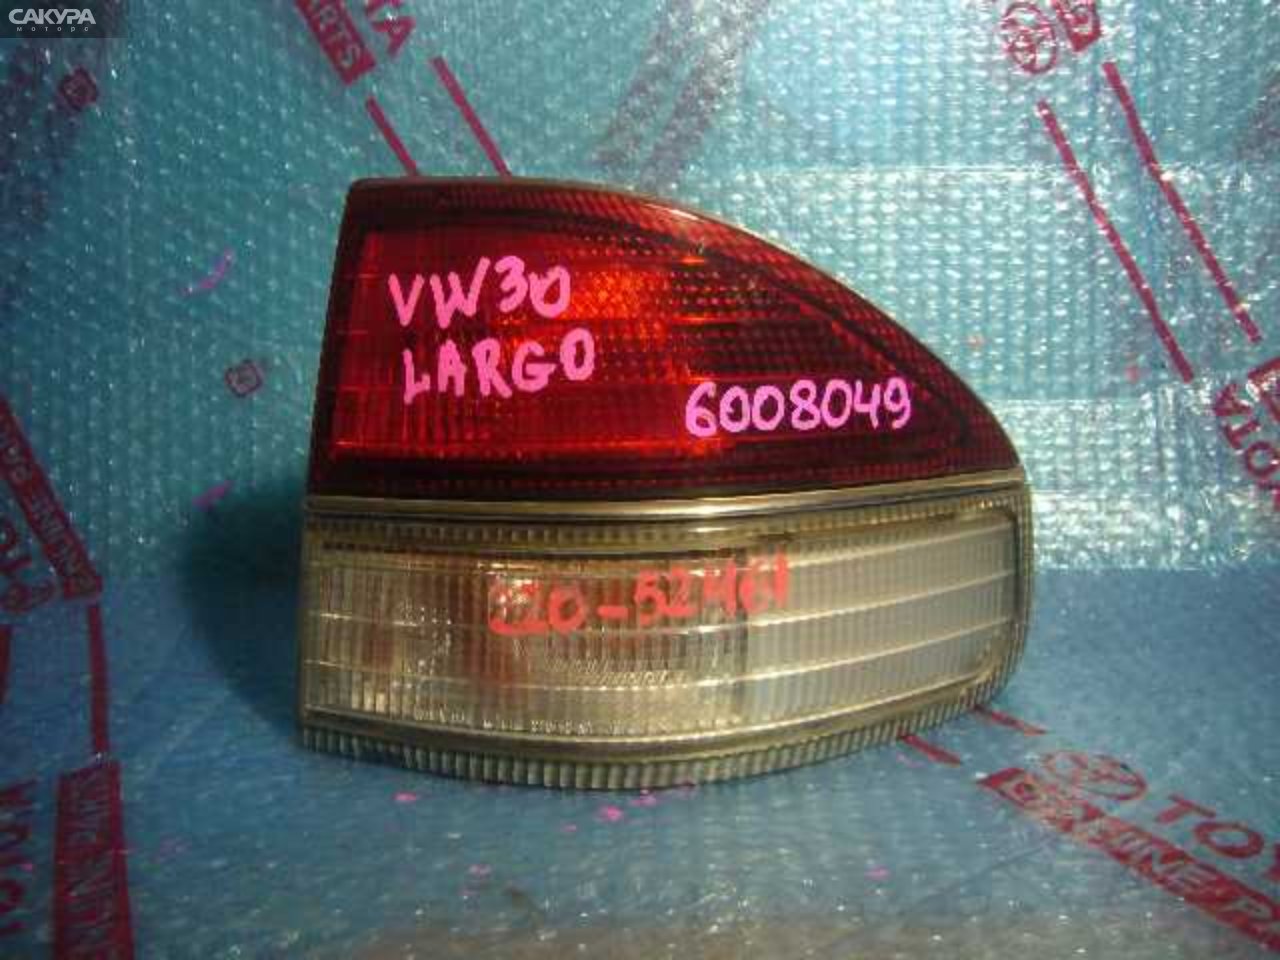 Фонарь стоп-сигнала правый Nissan Largo W30 220-52461: купить в Сакура Кемерово.